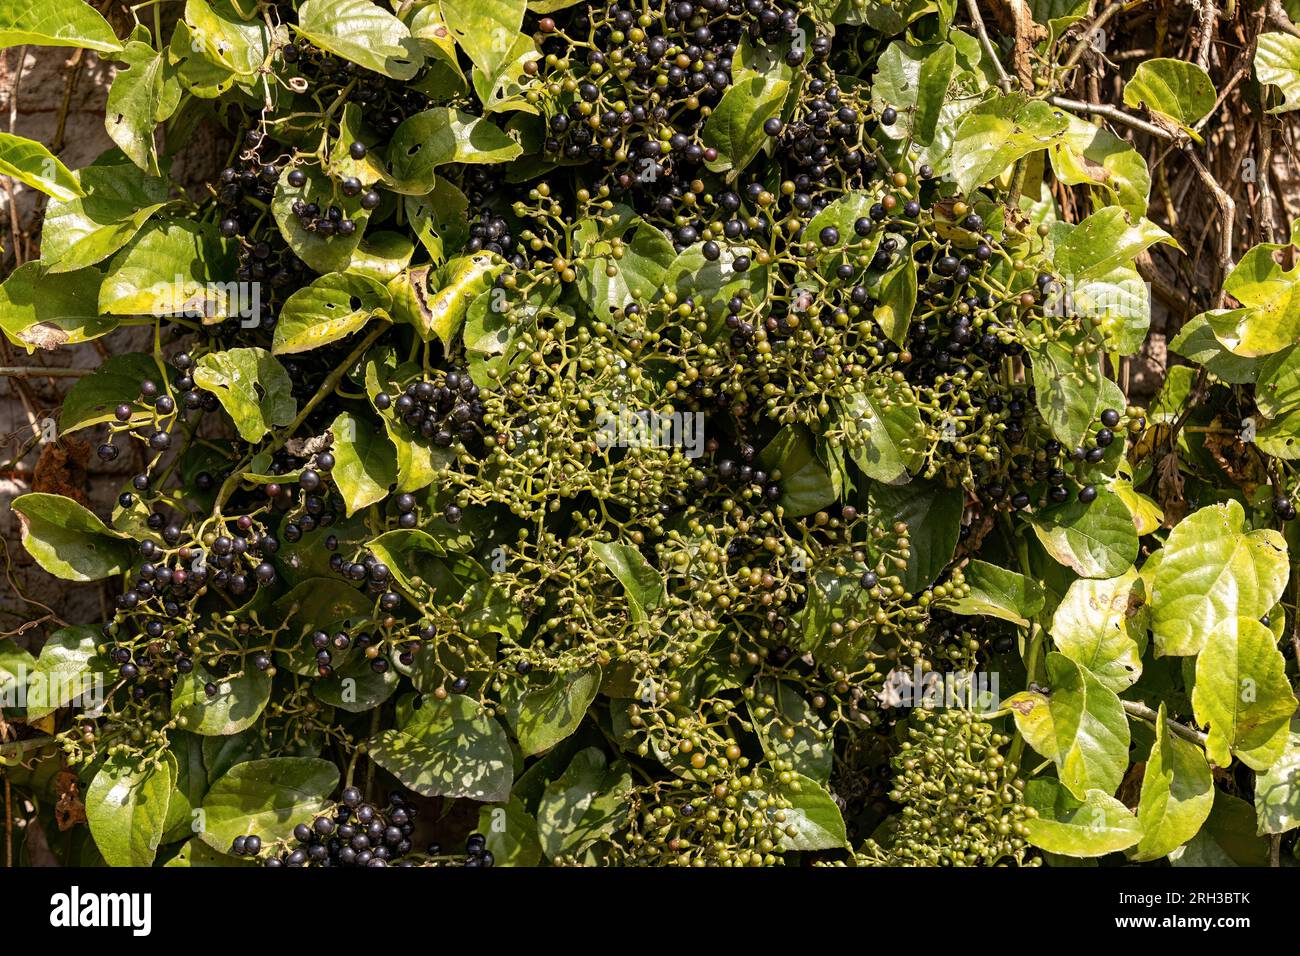 Possum Grape Fruiting Plant of the species Cissus verticillata Stock Photo